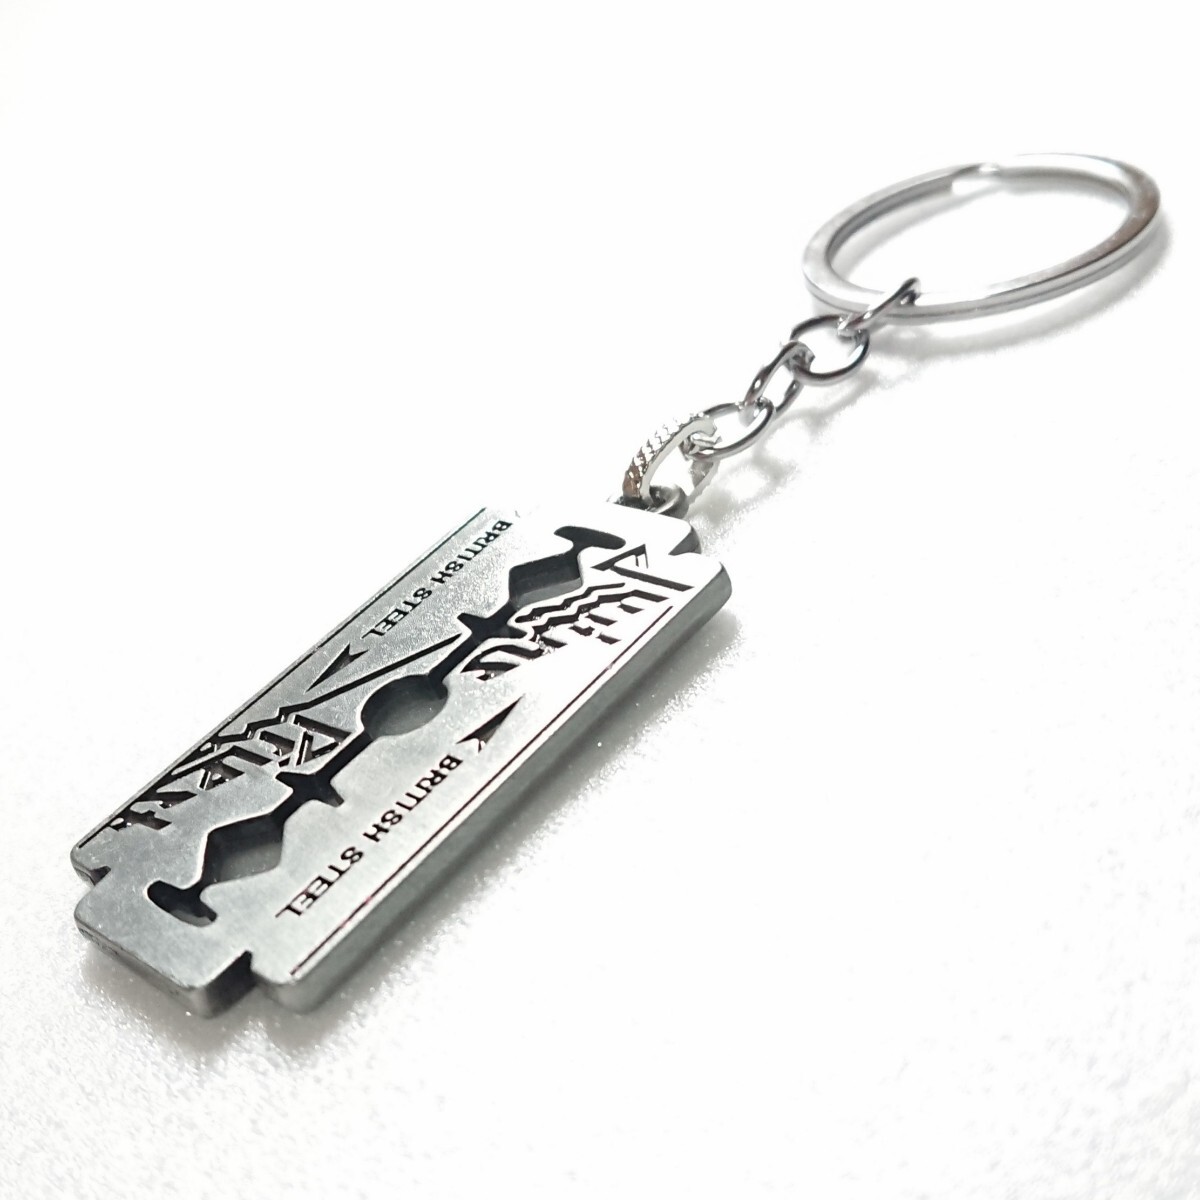 Judas Priest Judas * Priest key holder silver 